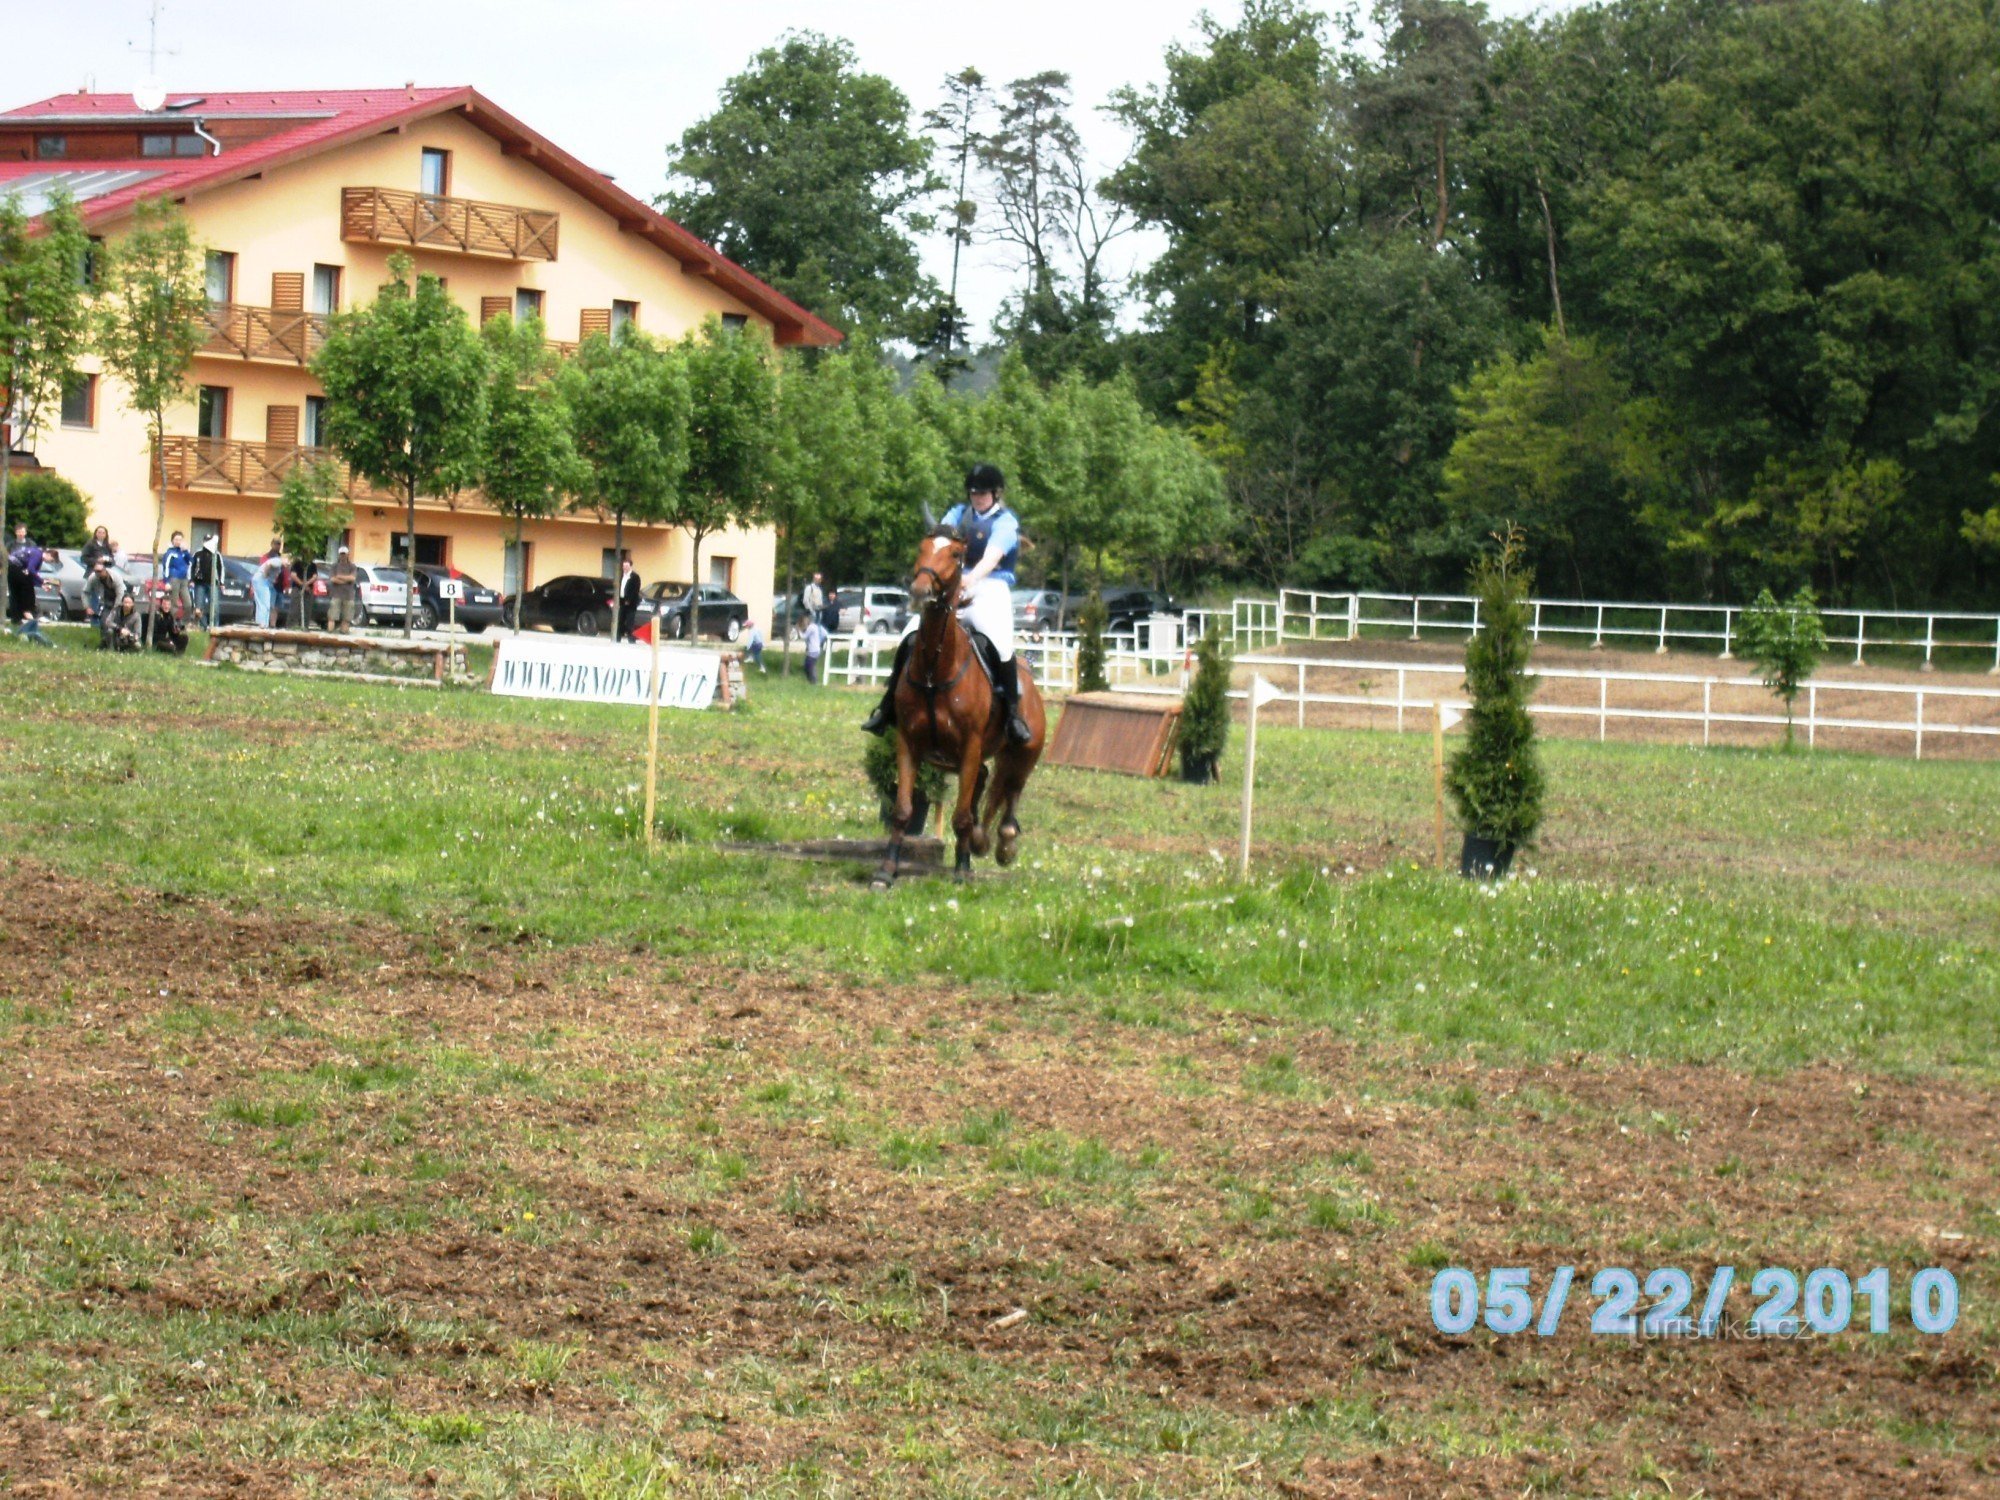 XIII. año del Campeonato Internacional de la Policía de la República Checa en equitación en el complejo Panská lícha